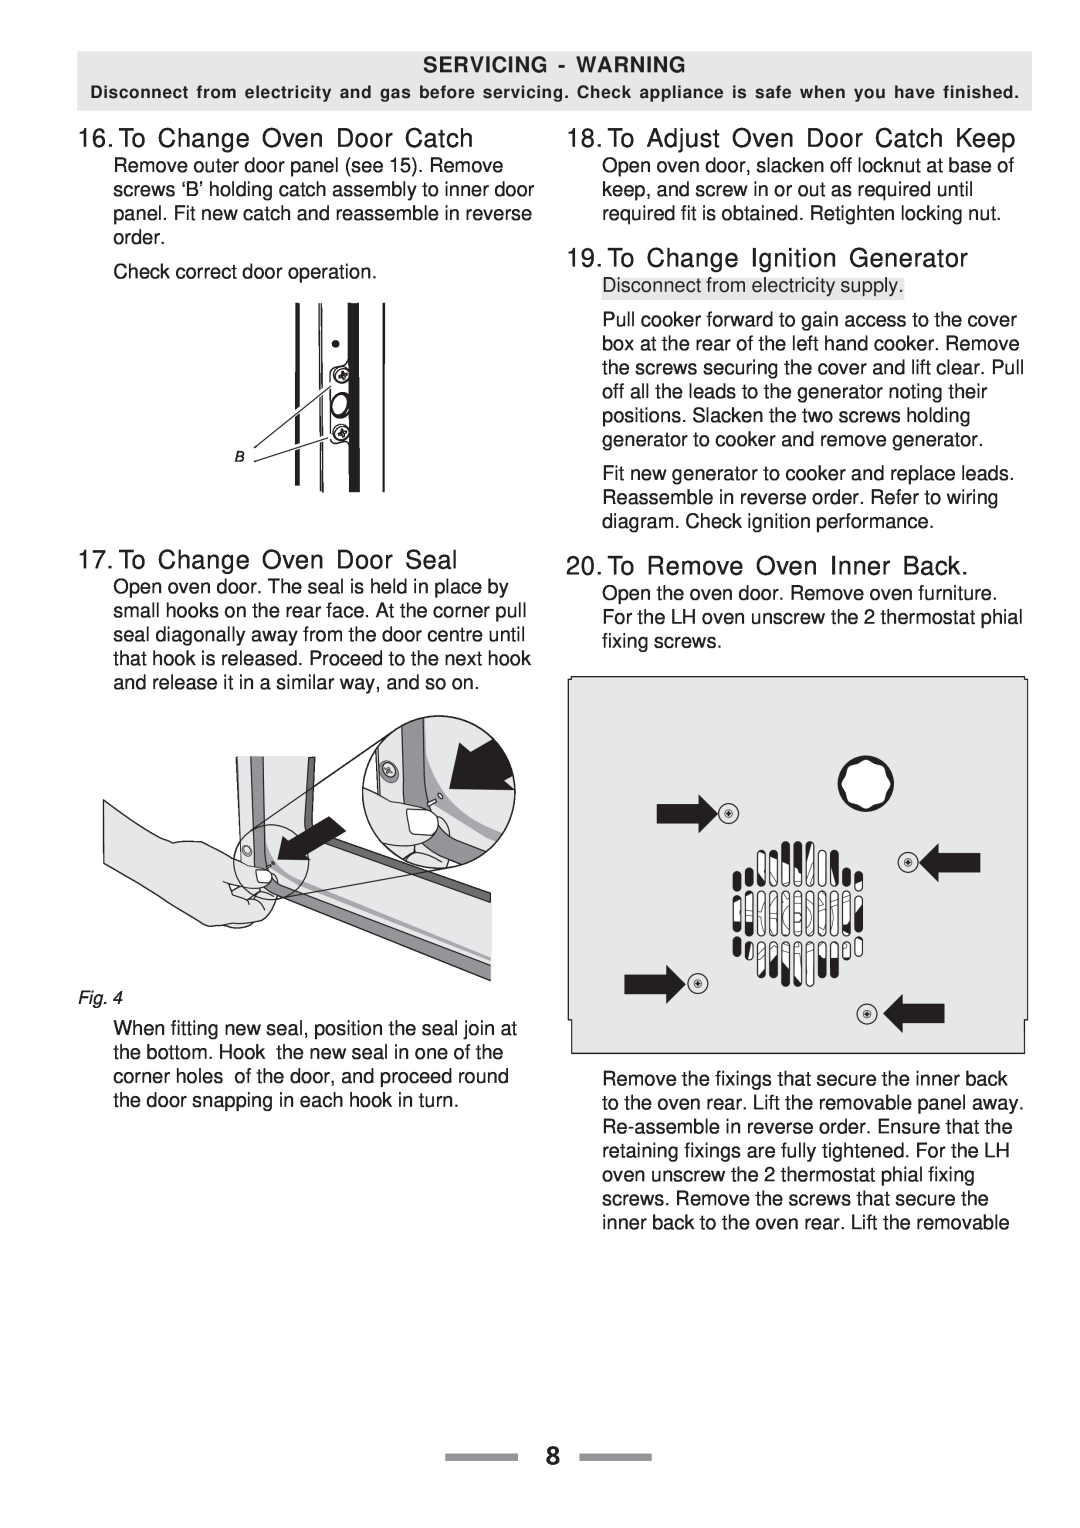 Aga Ranges F104010-01 manual To Change Oven Door Catch, To Adjust Oven Door Catch Keep, To Change Ignition Generator 